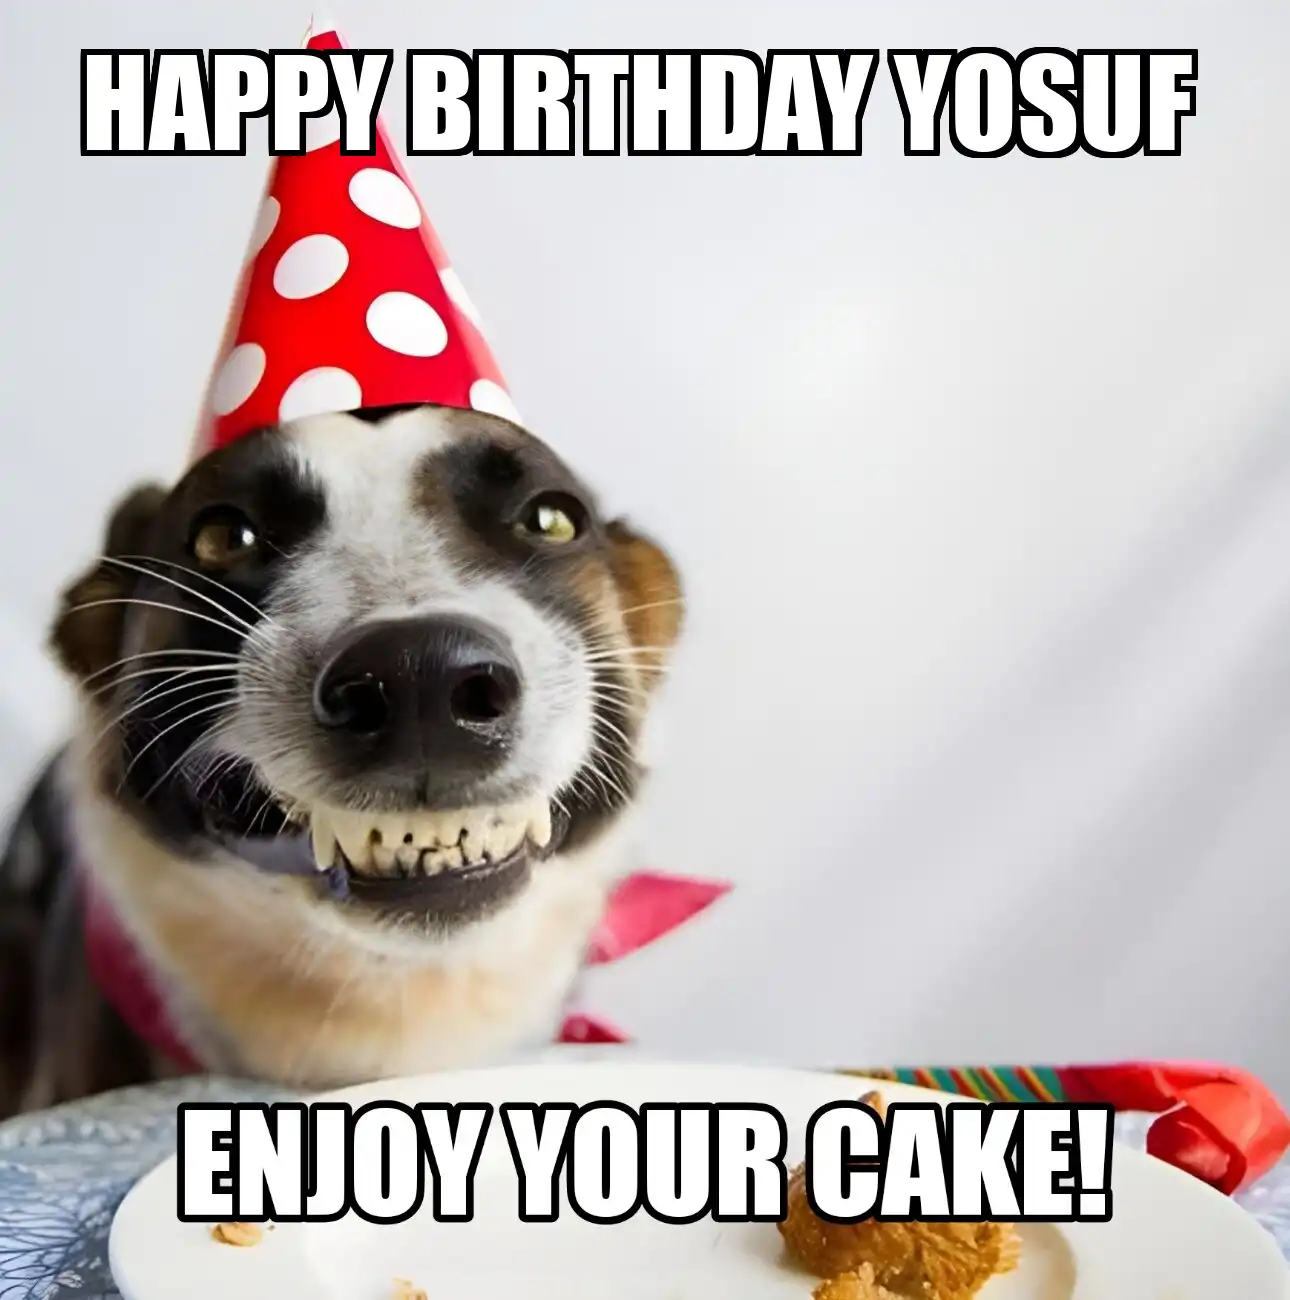 Happy Birthday Yosuf Enjoy Your Cake Dog Meme